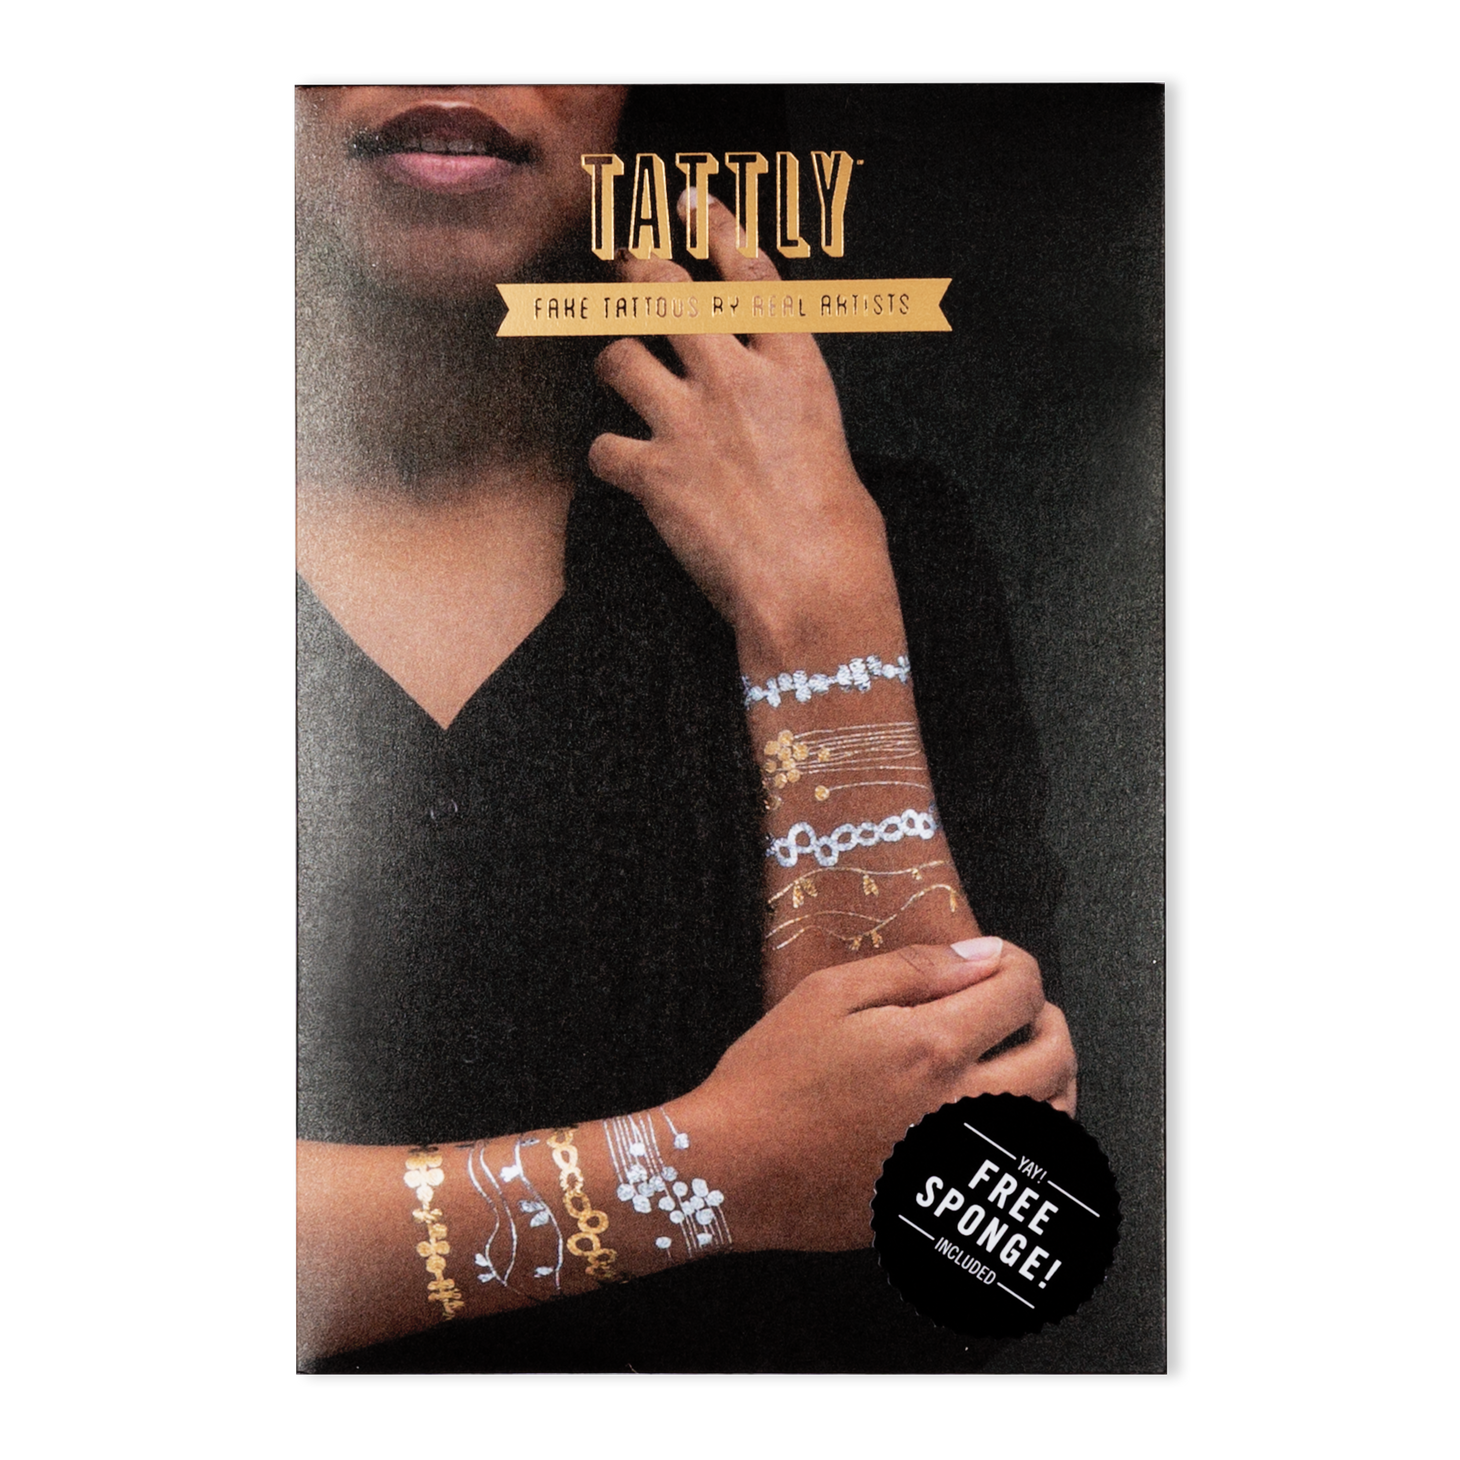 Wrist Bracelet Tattoo - Best Tattoo Ideas Gallery